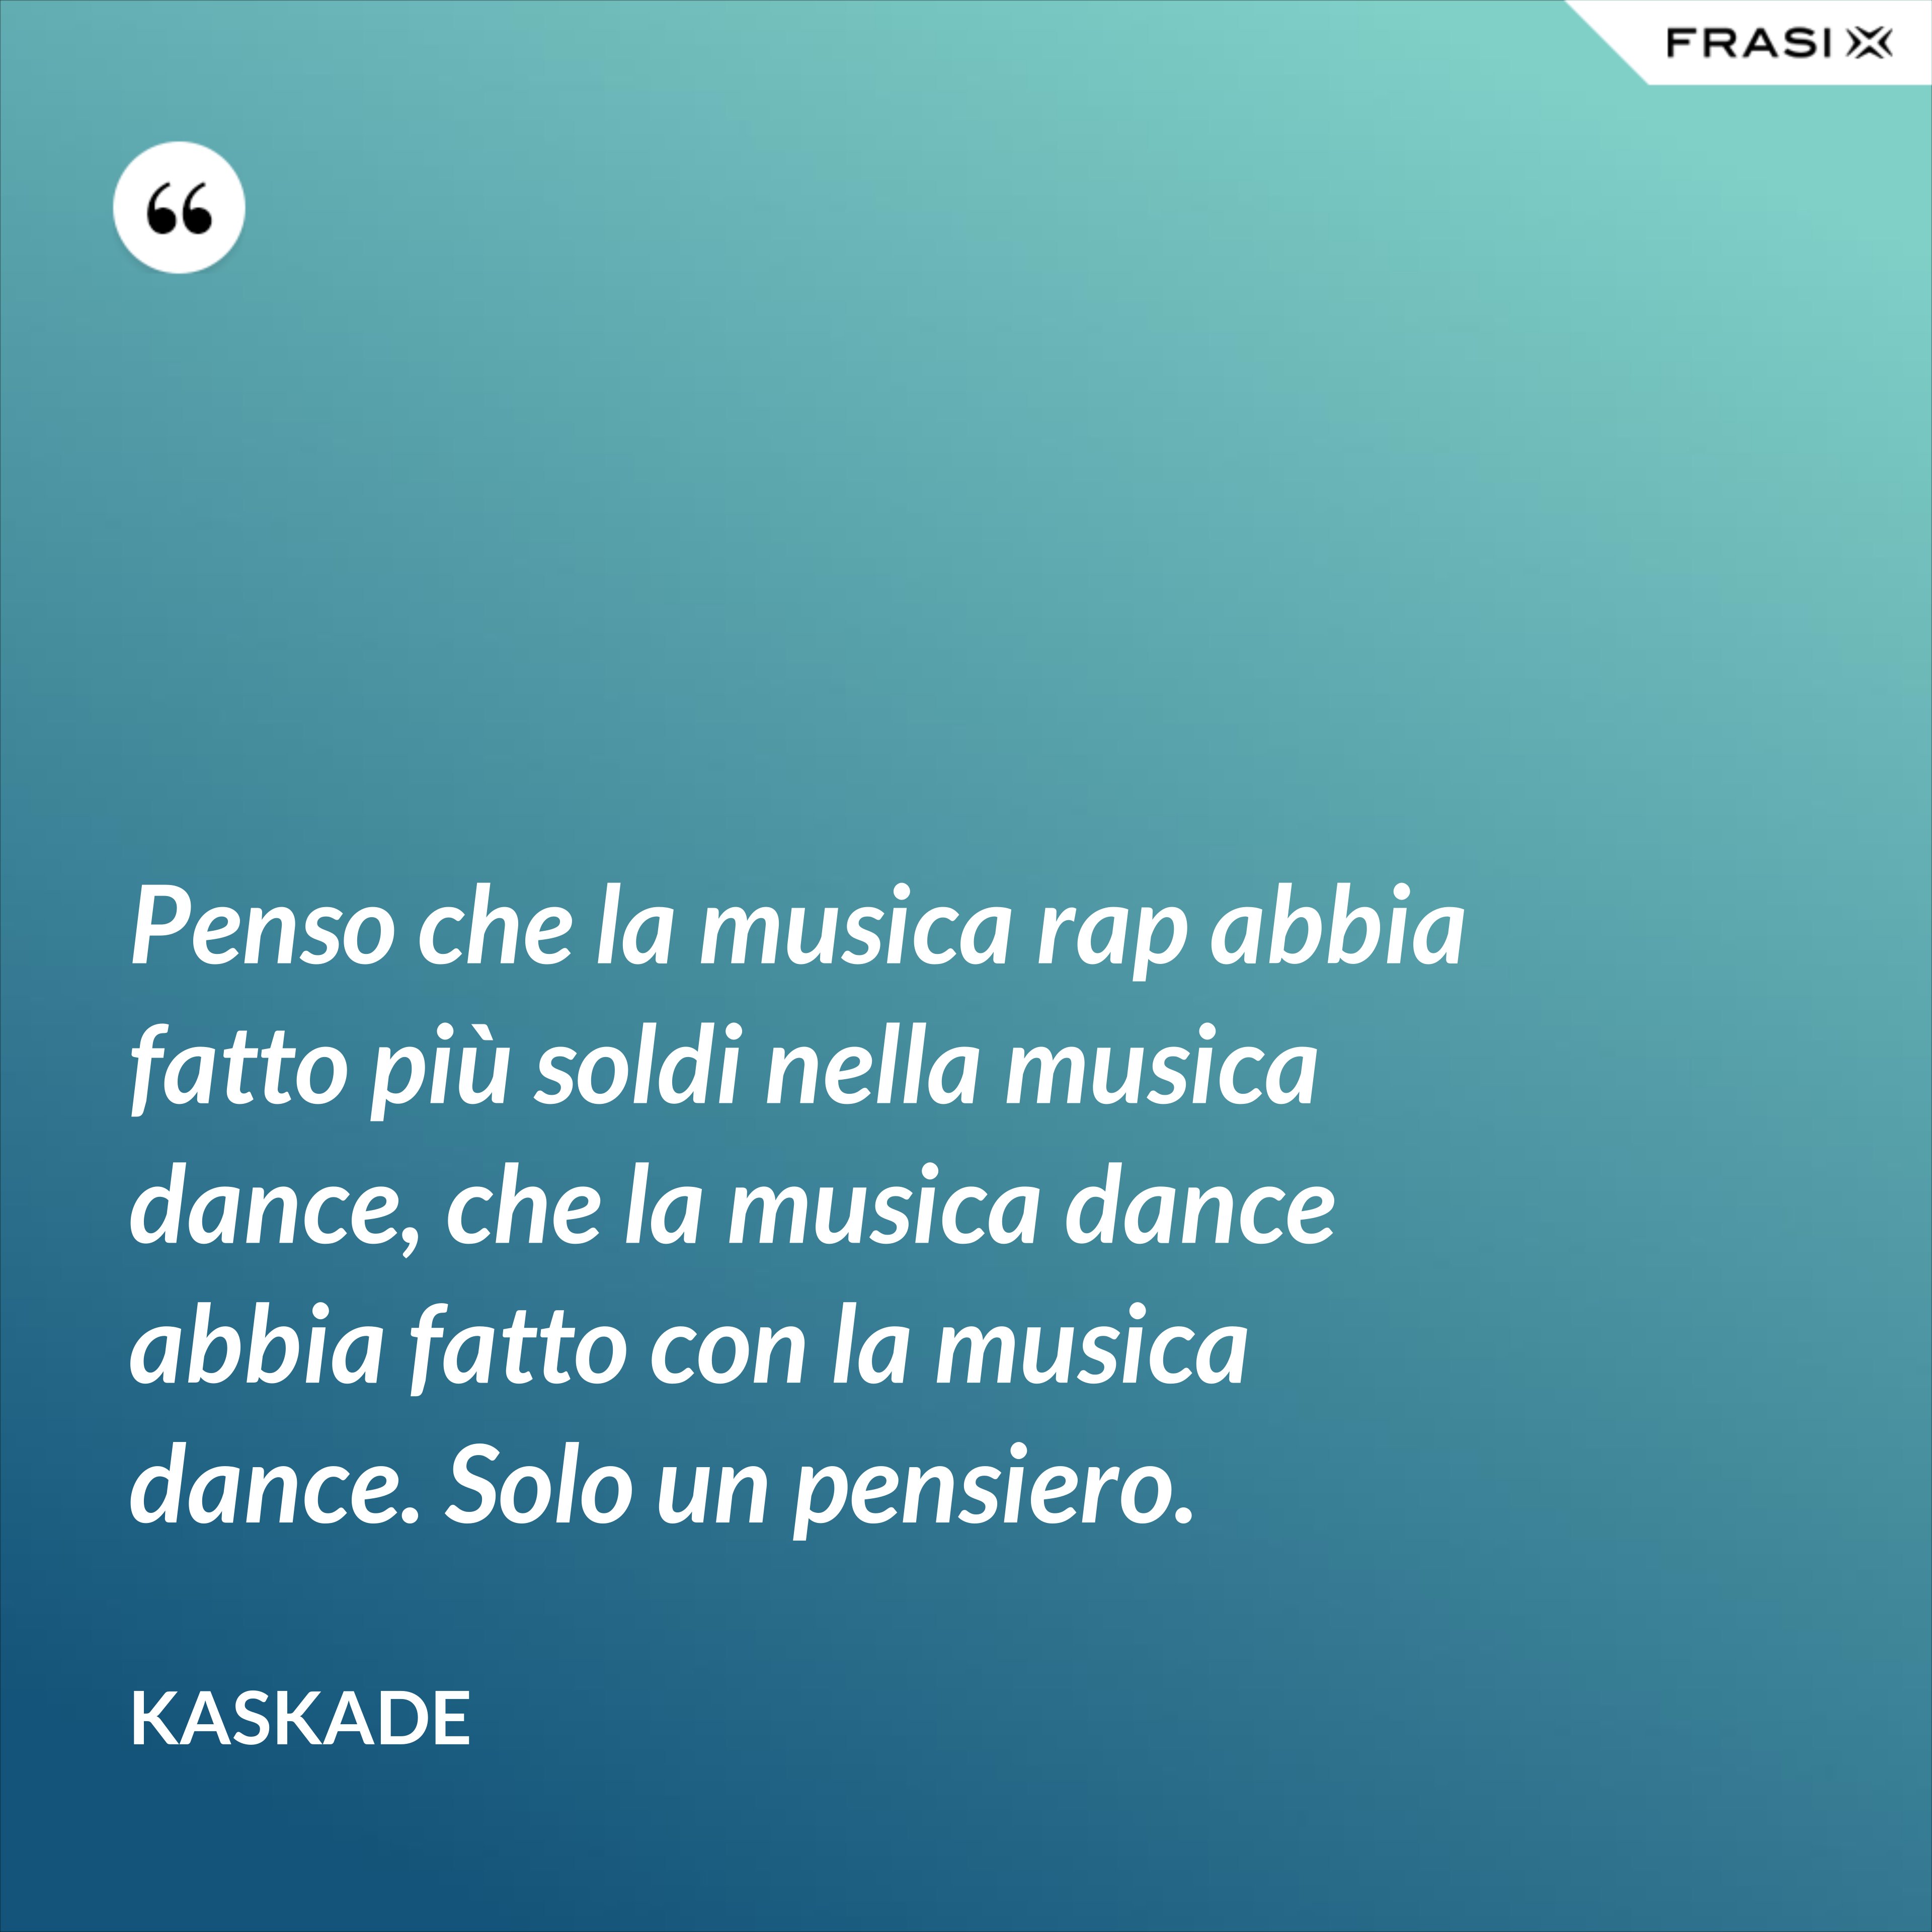 Penso che la musica rap abbia fatto più soldi nella musica dance, che la musica dance abbia fatto con la musica dance. Solo un pensiero. - Kaskade